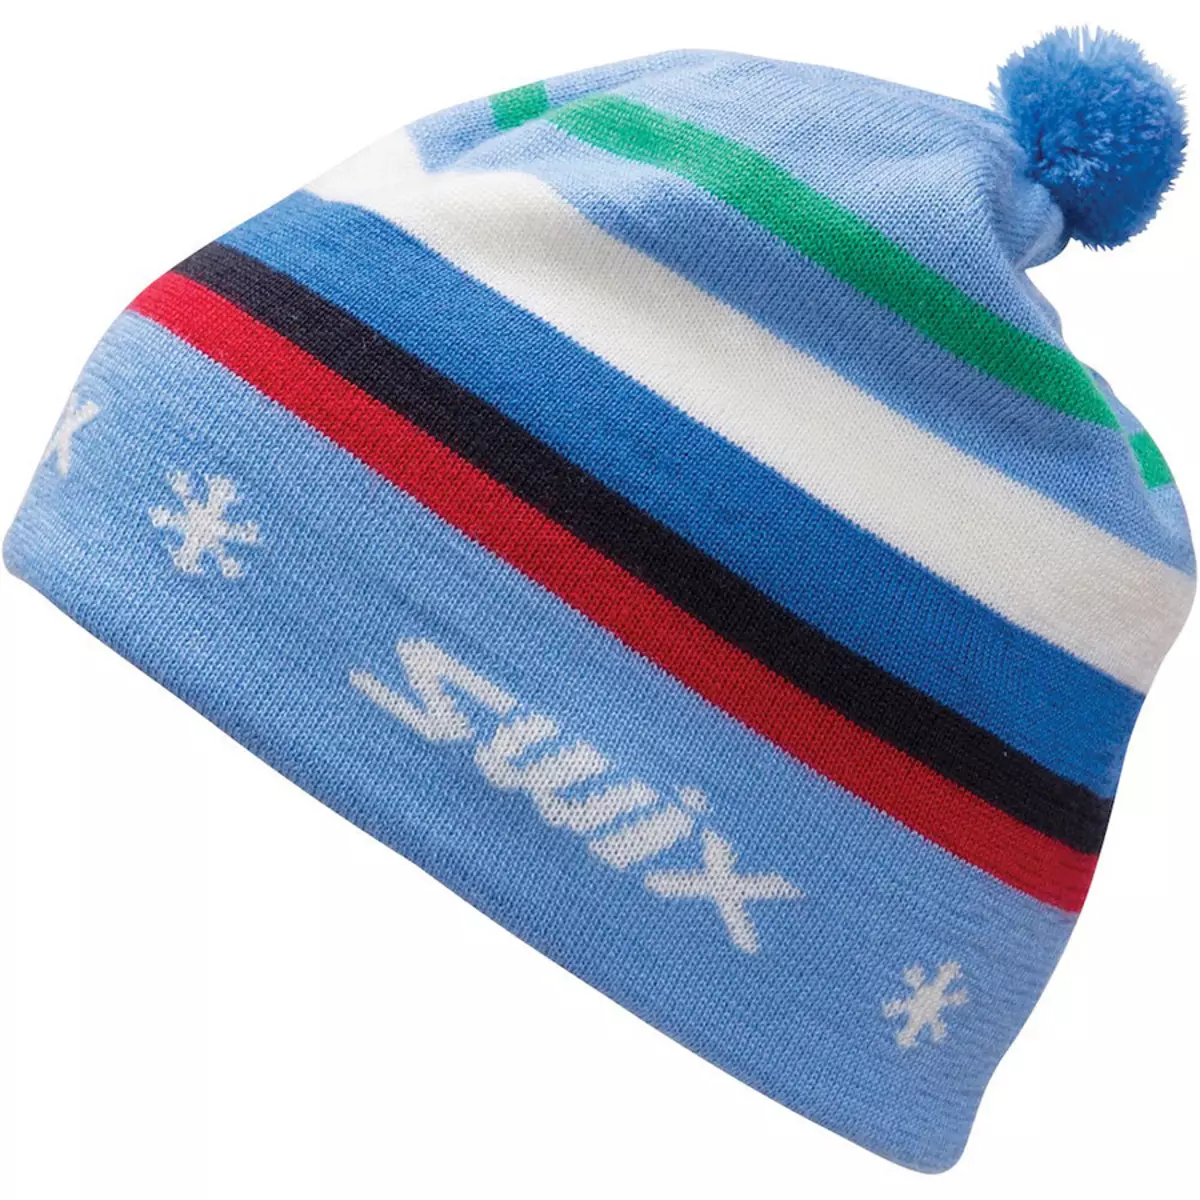 スキーの帽子：スキーキャップとクロスカントリースキー、女性やその他のスポーツモデル。スキーヤーのための帽子を選択する方法は？ 20204_2